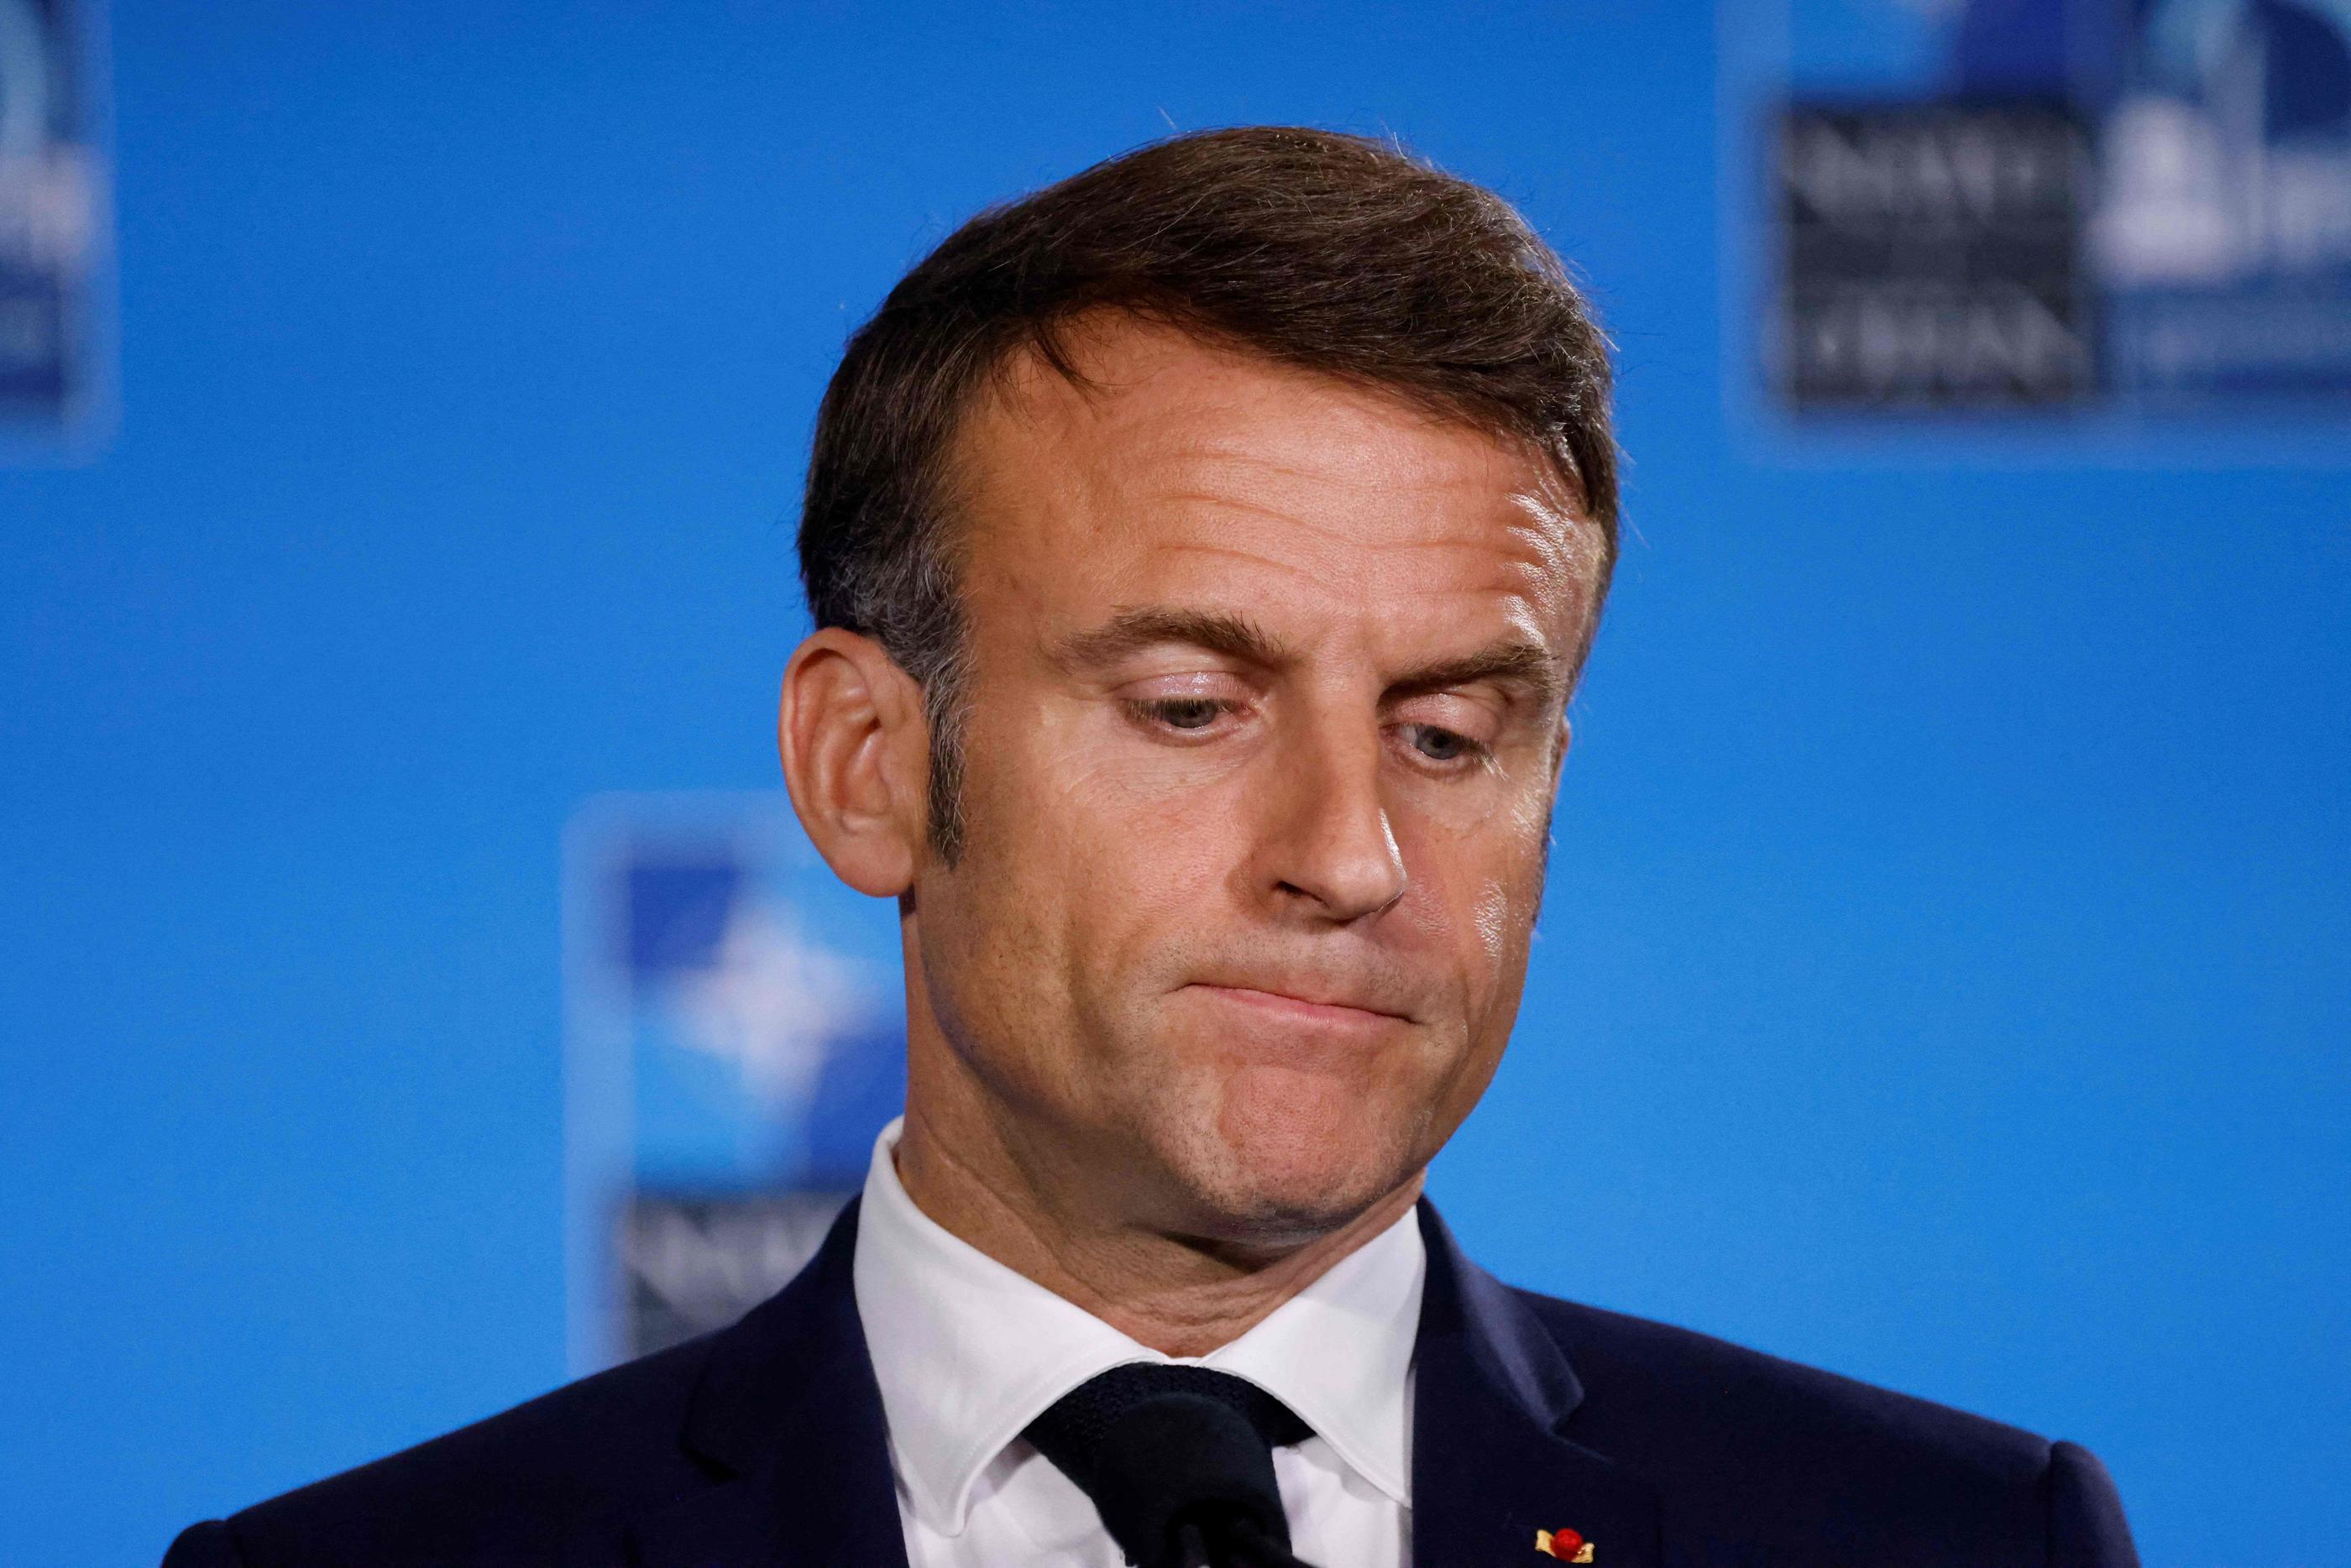 «On fait exactement ce que nous reprochions aux autres avant d’arriver au pouvoir en 2017», a déploré, selon des participants, Emmanuel Macron (ici à Washington jeudi), décrit comme très en colère. AFP/Ludovic Marin